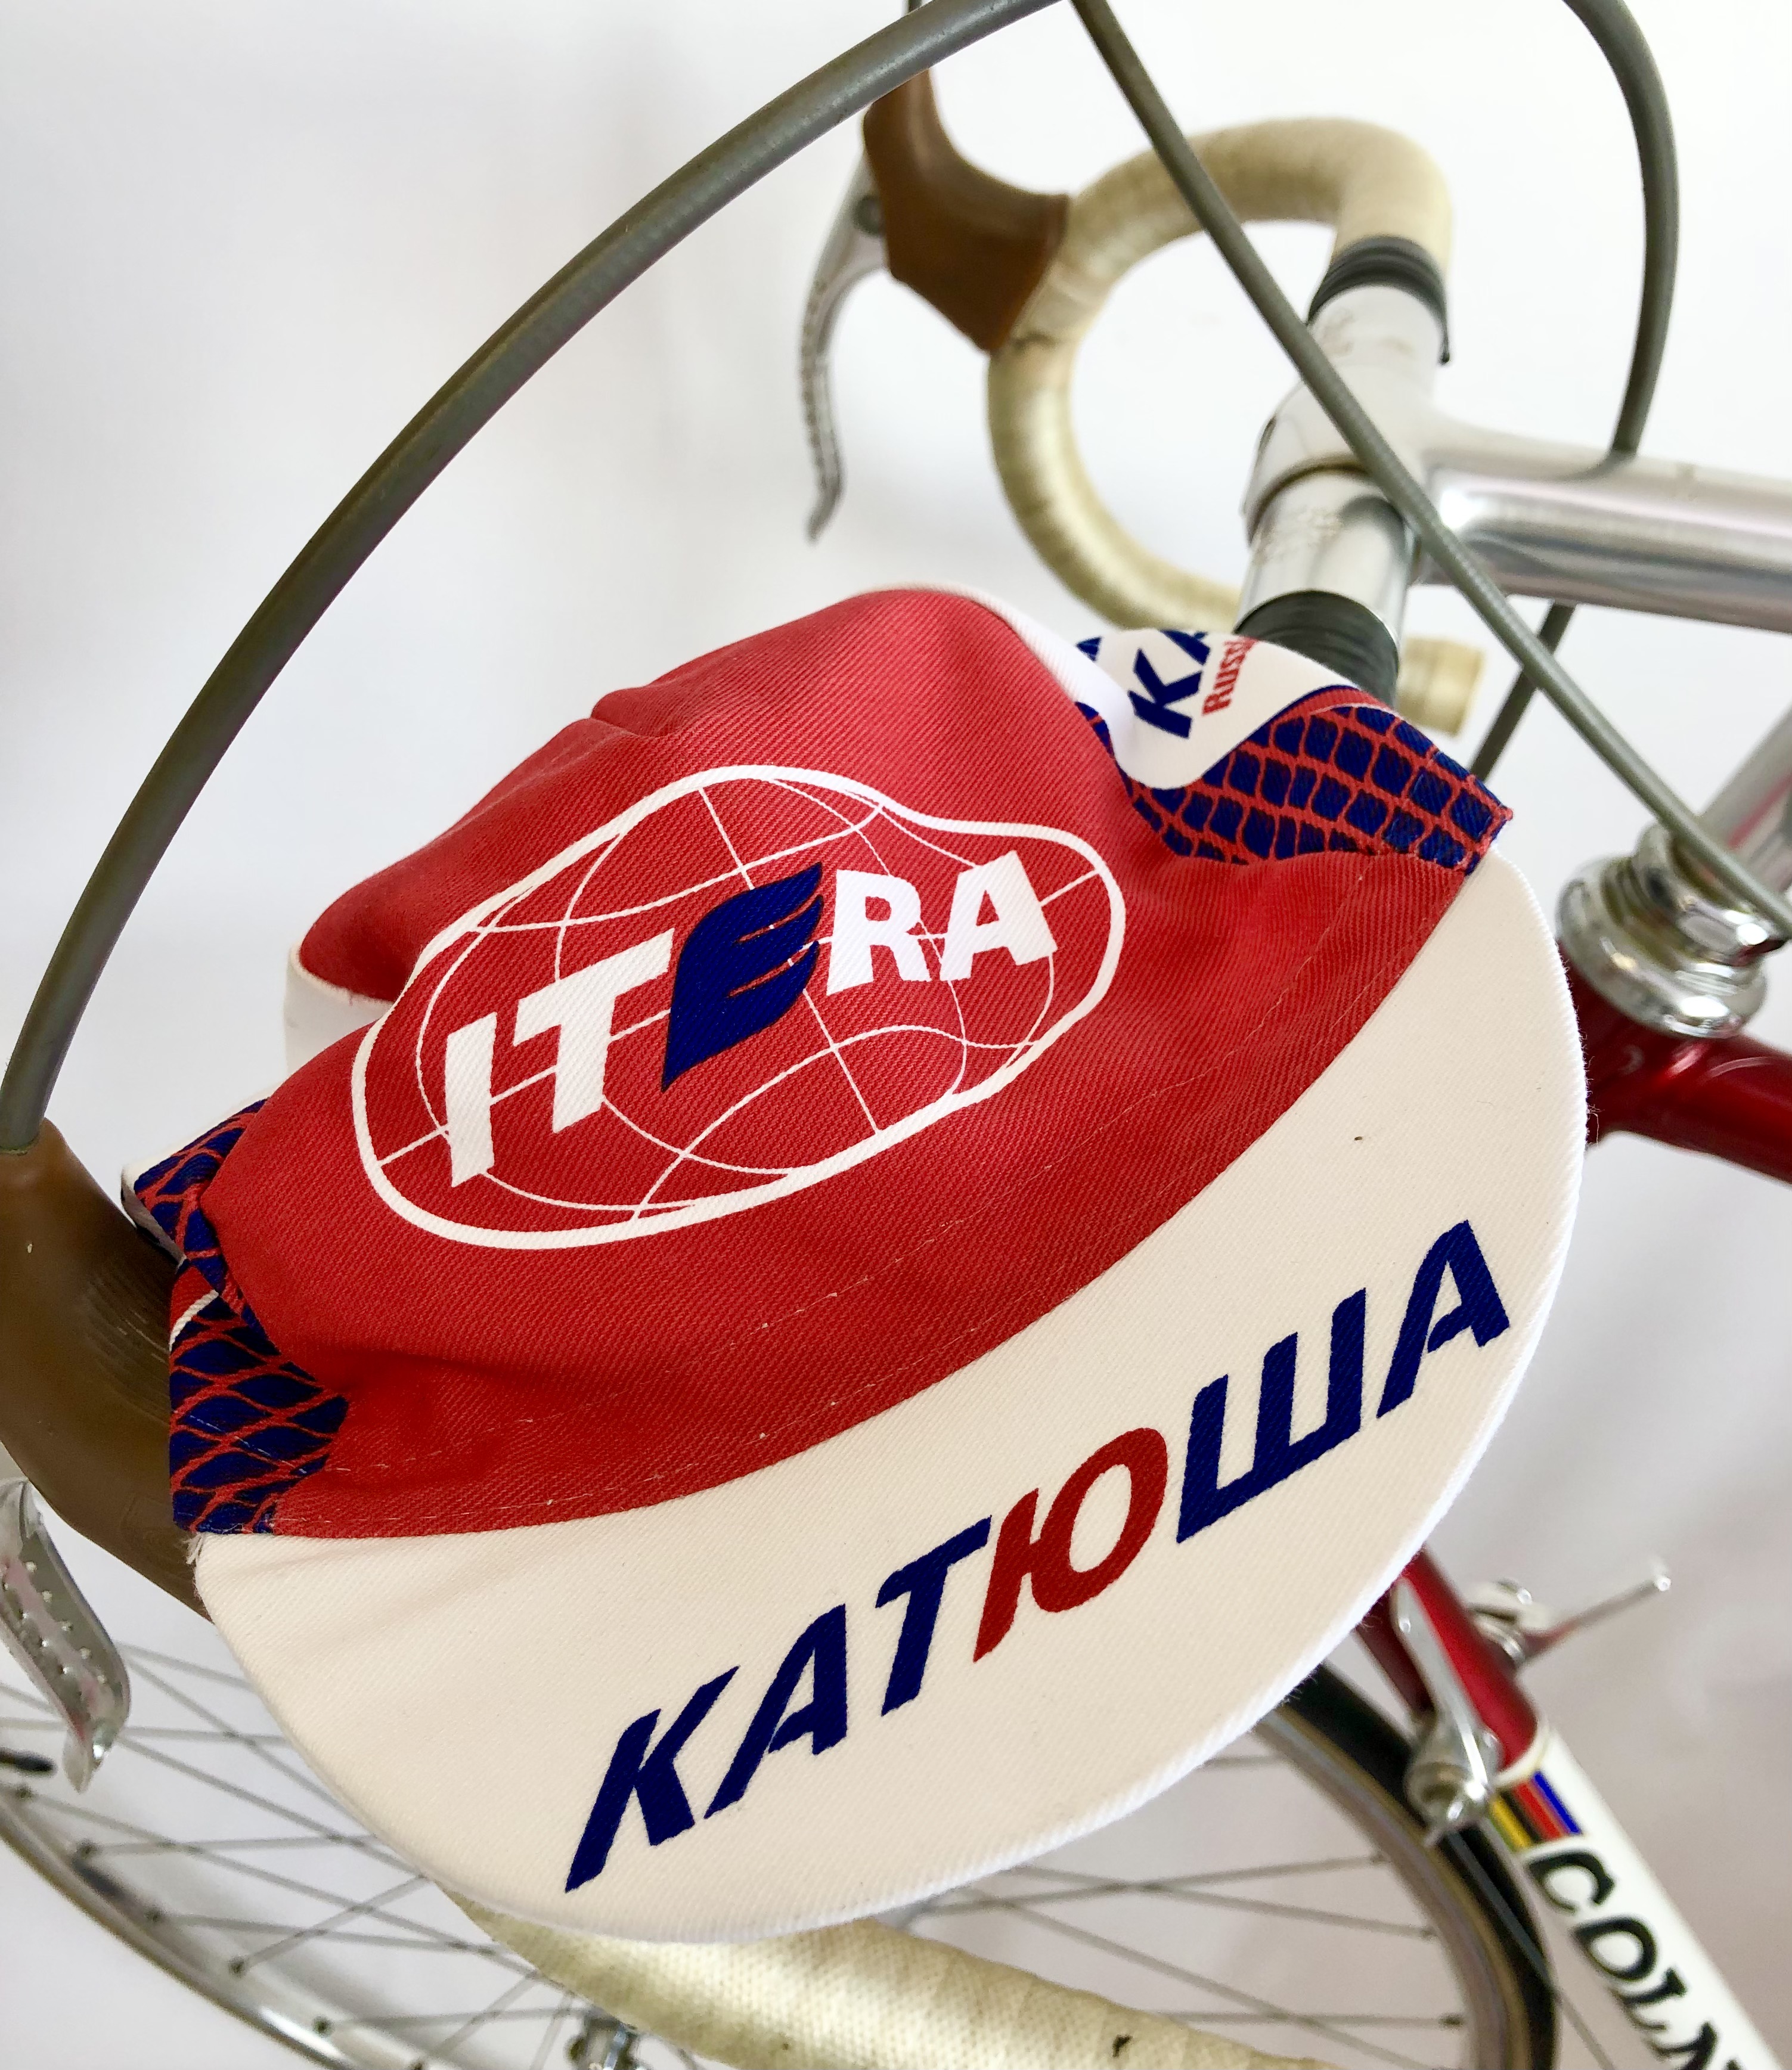 La Casquette Team Katusha Itera, rouge / blanc